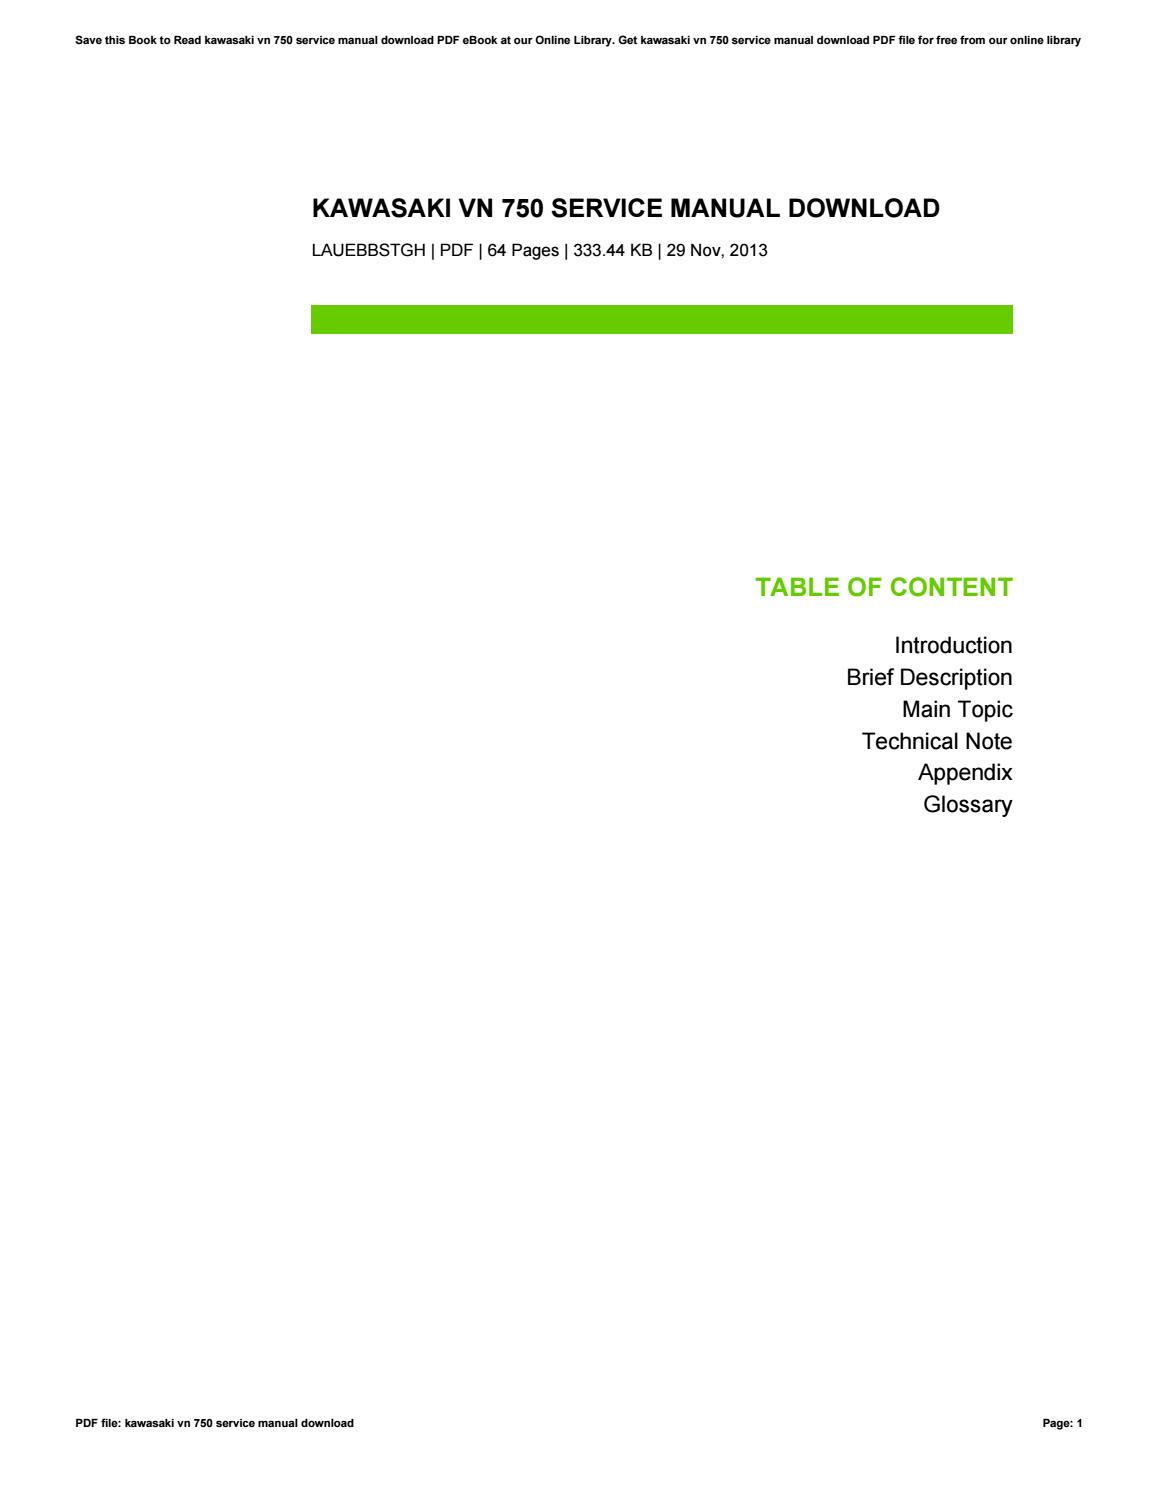 Free online kawasaki repair manuals